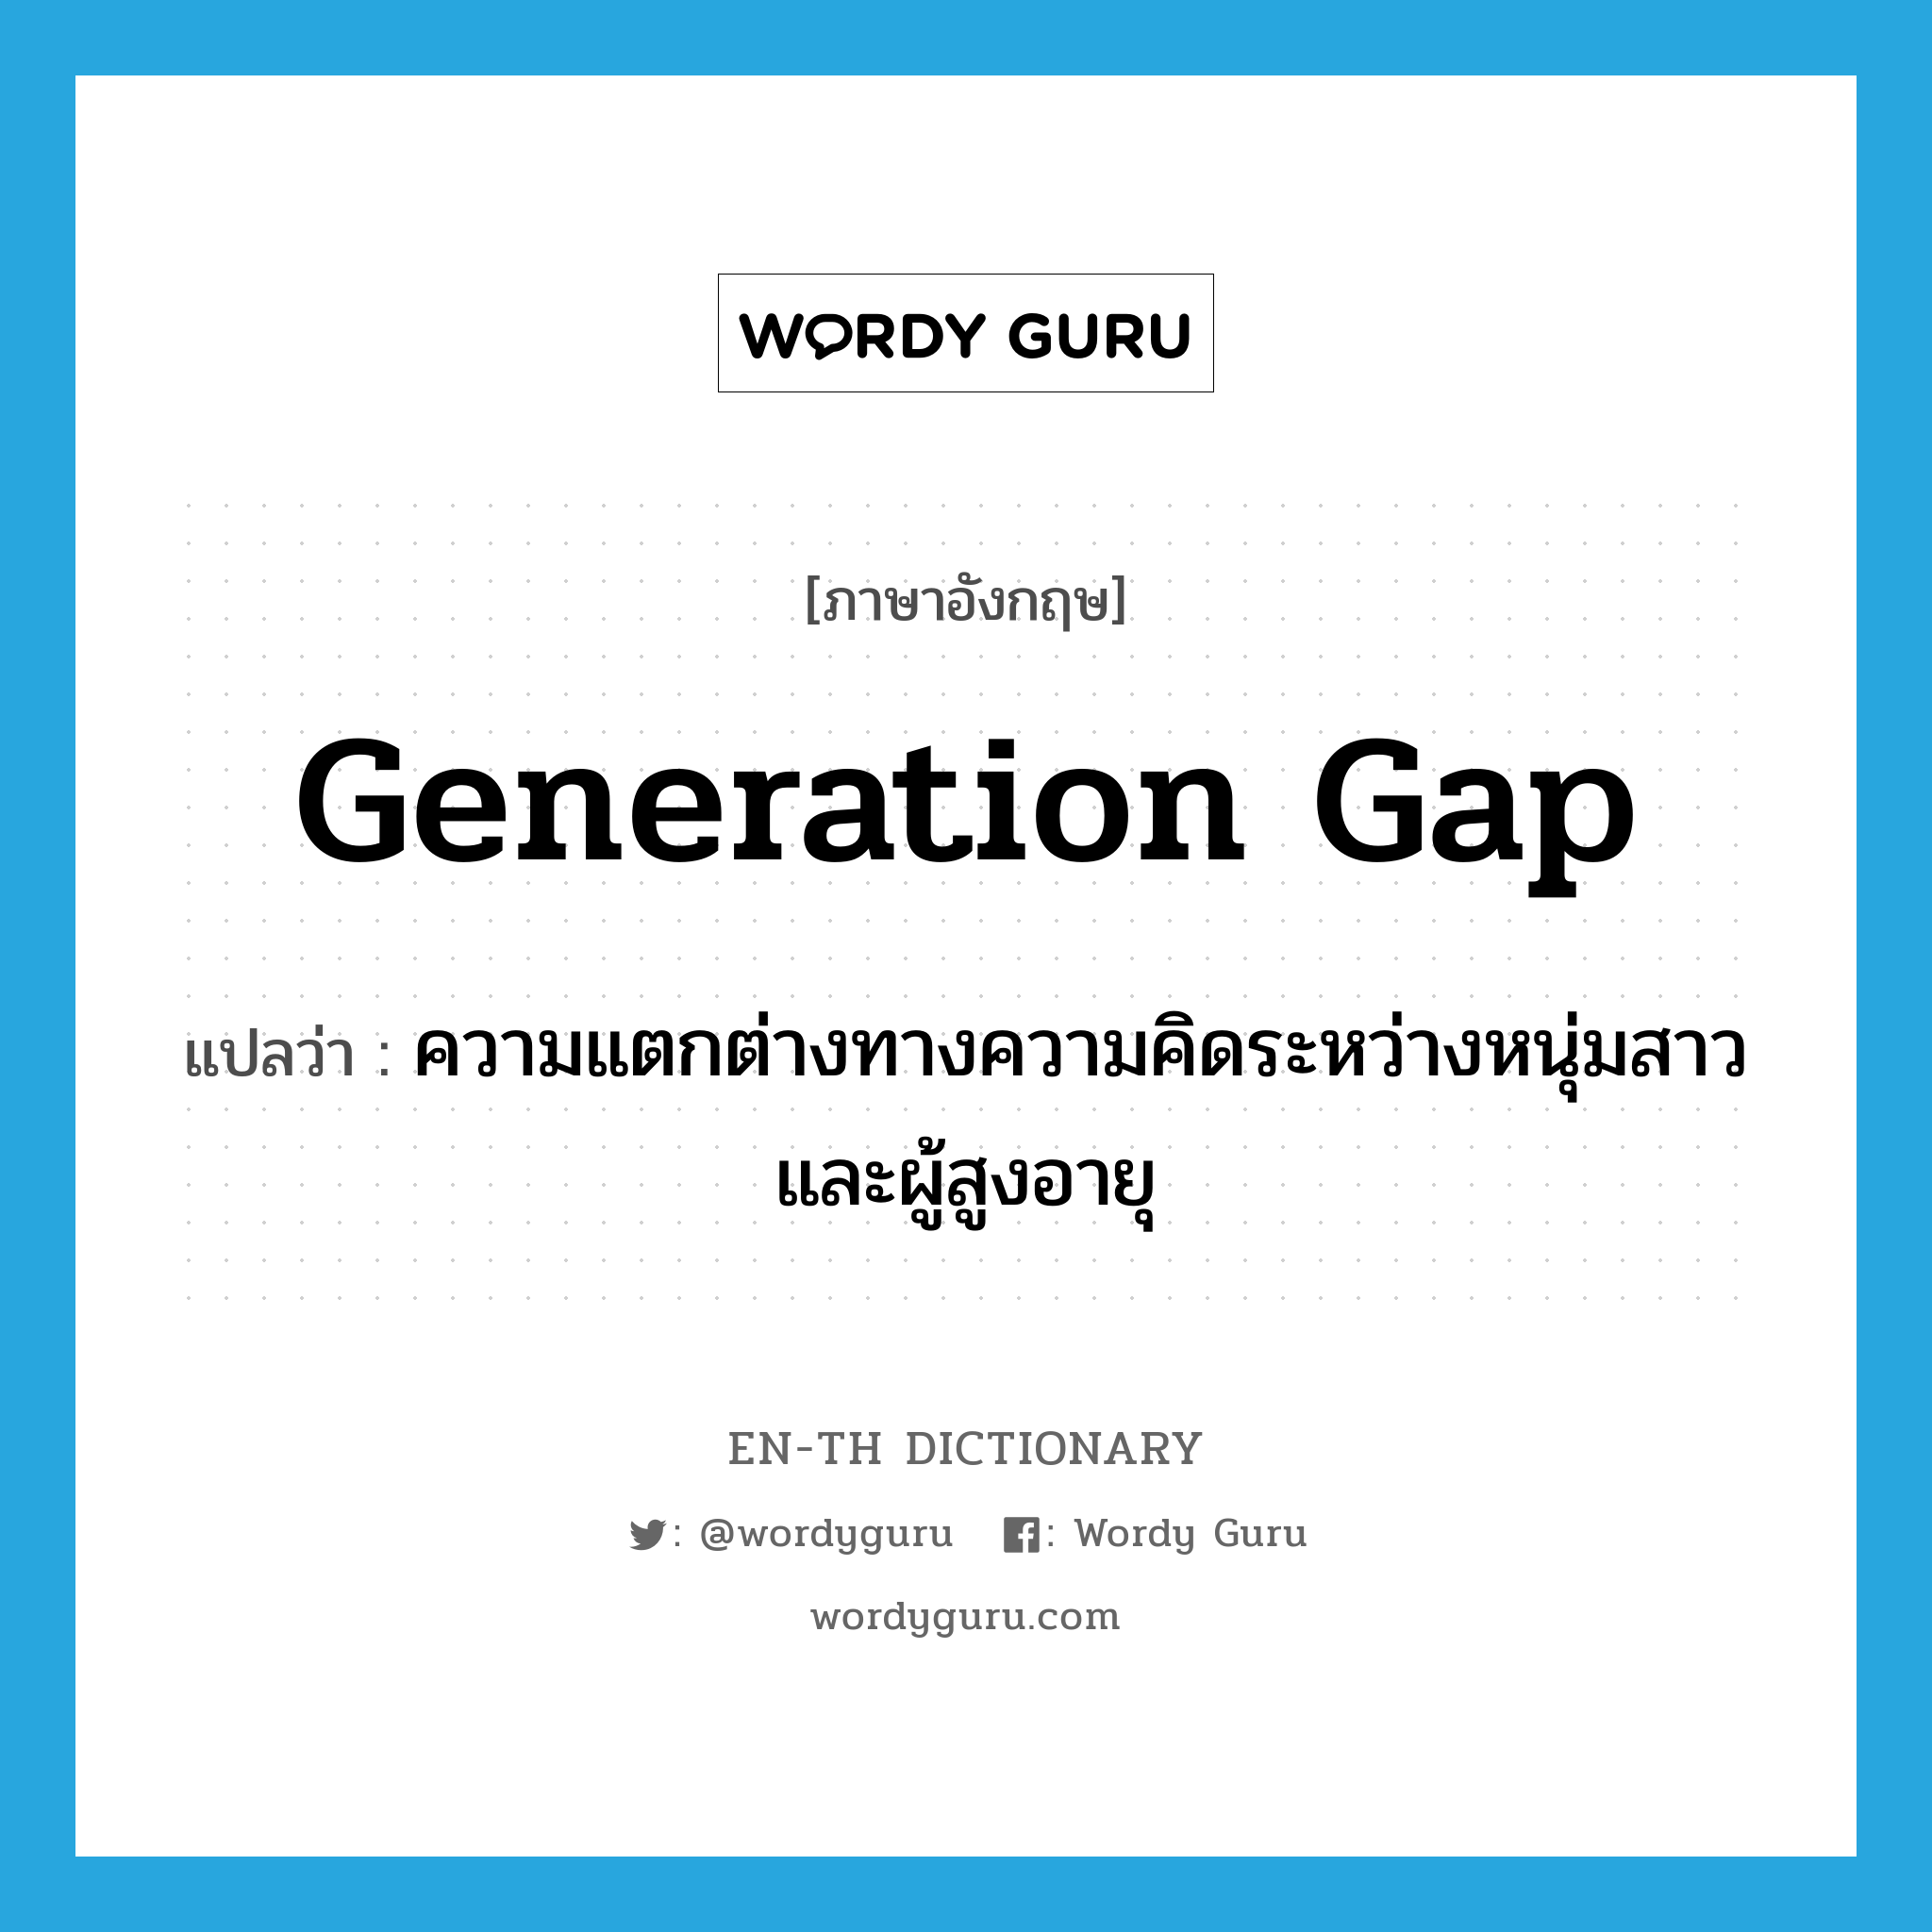 ความแตกต่างทางความคิดระหว่างหนุ่มสาวและผู้สูงอายุ ภาษาอังกฤษ?, คำศัพท์ภาษาอังกฤษ ความแตกต่างทางความคิดระหว่างหนุ่มสาวและผู้สูงอายุ แปลว่า generation gap ประเภท N หมวด N